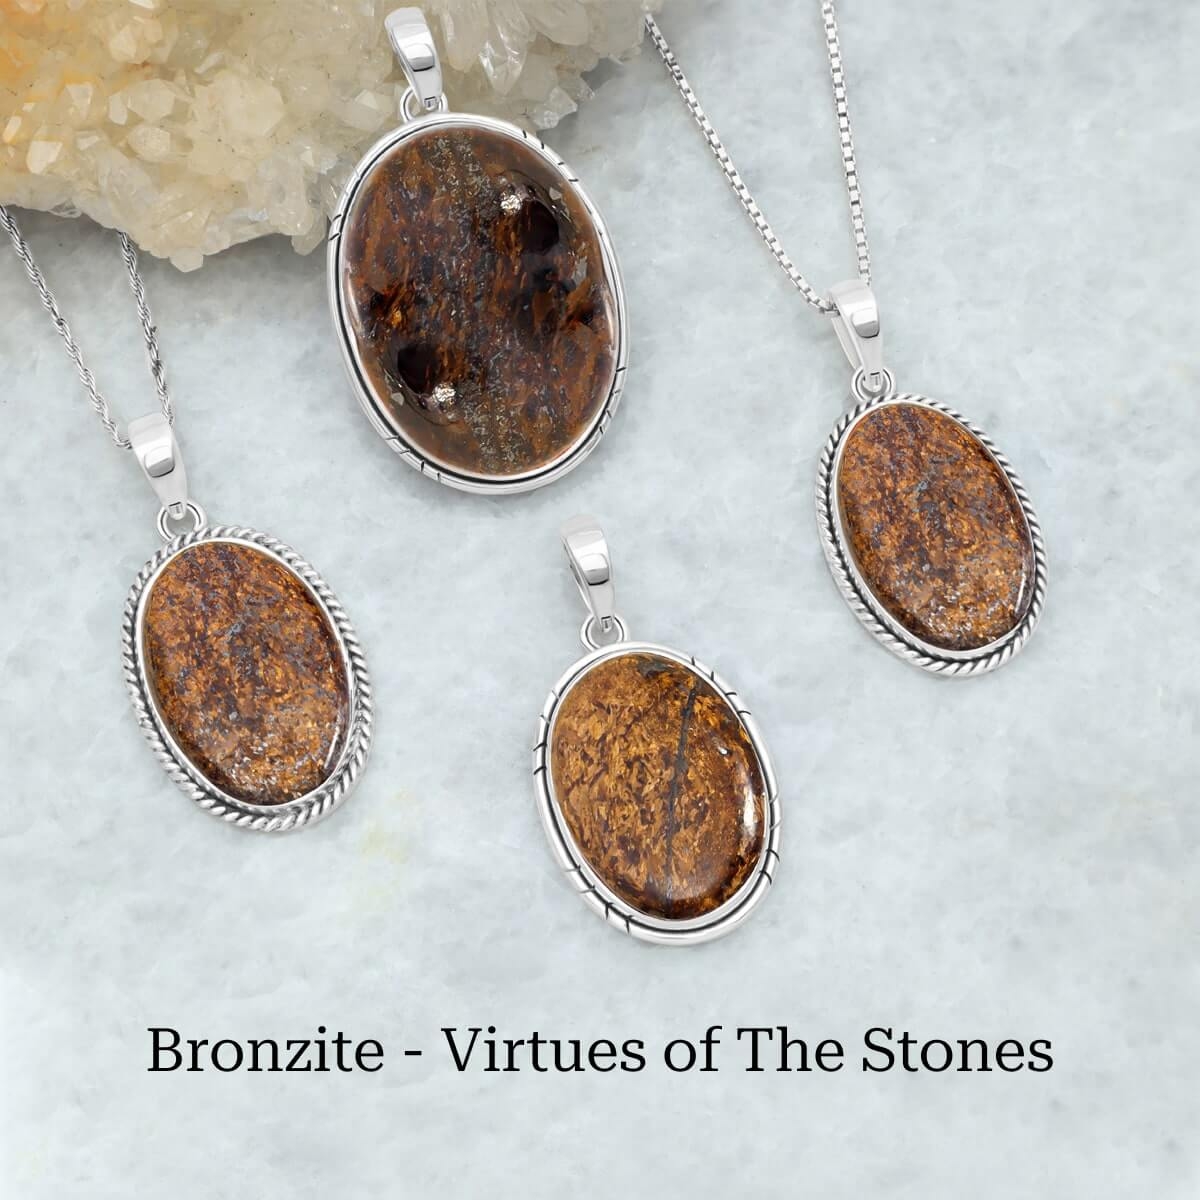 Uses of bronzite